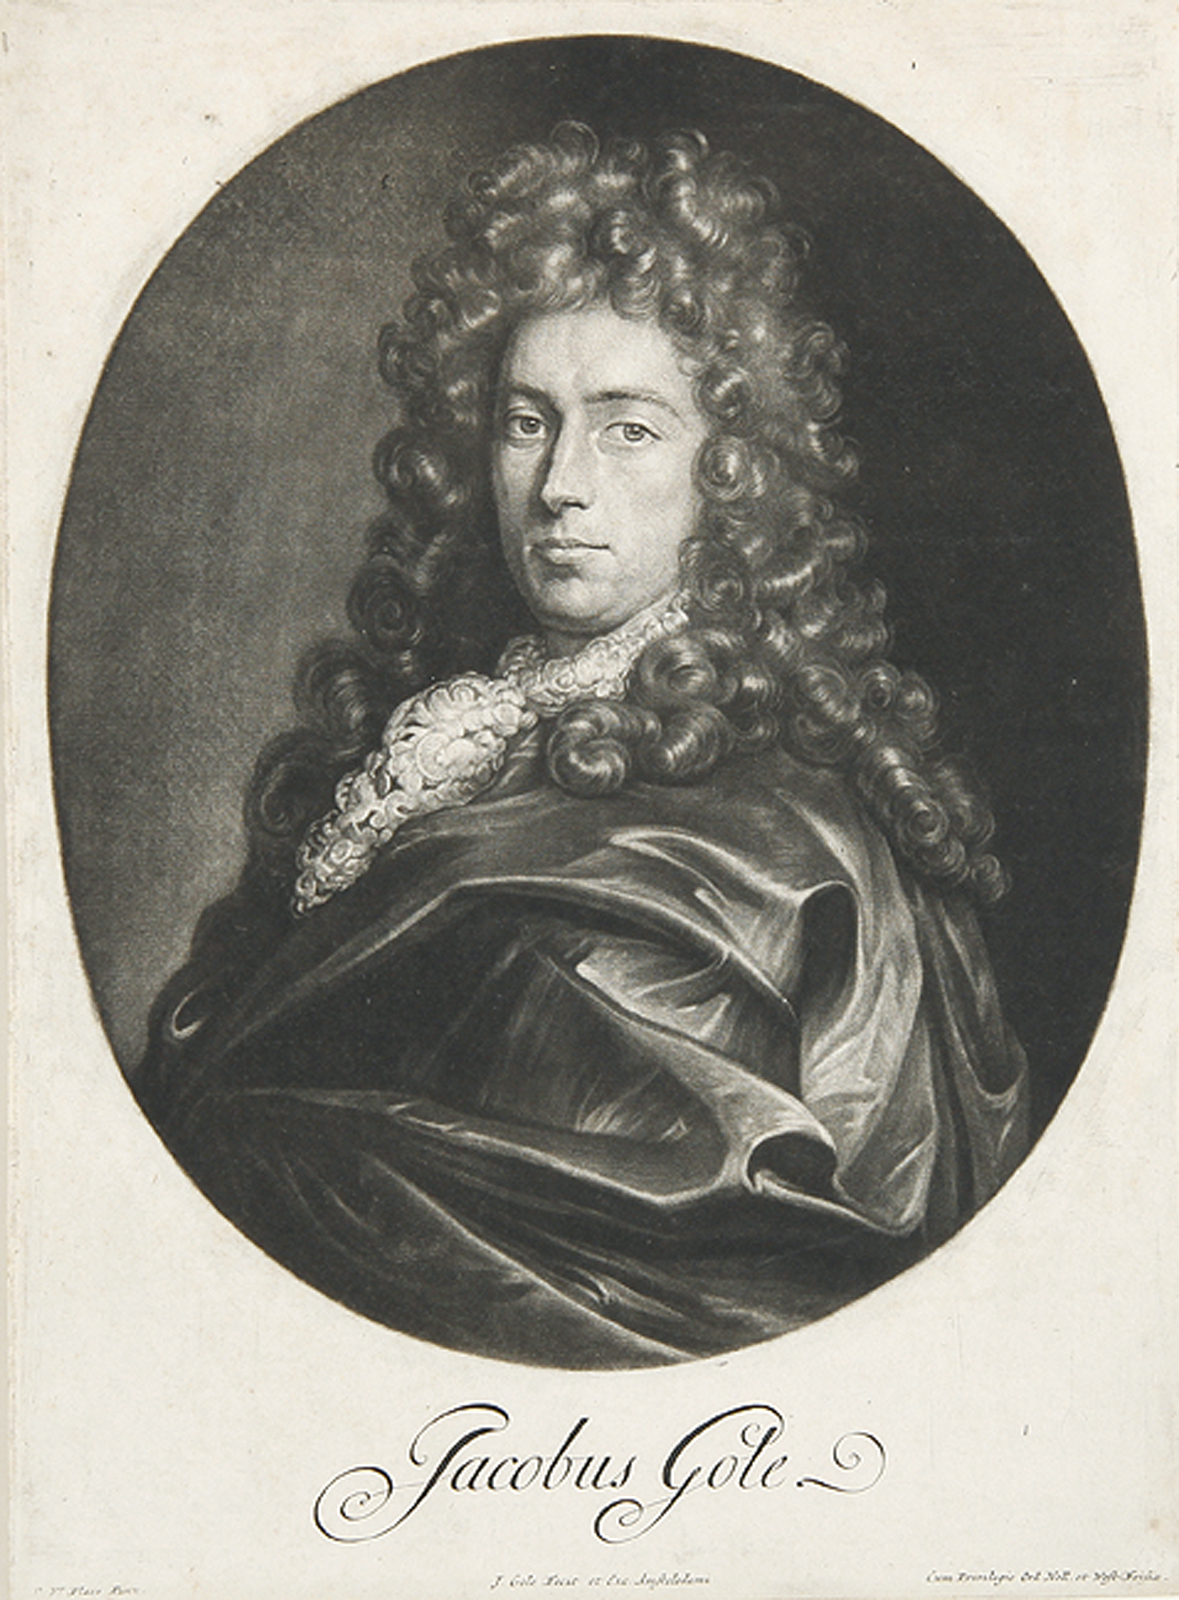 Jacobus Gole.